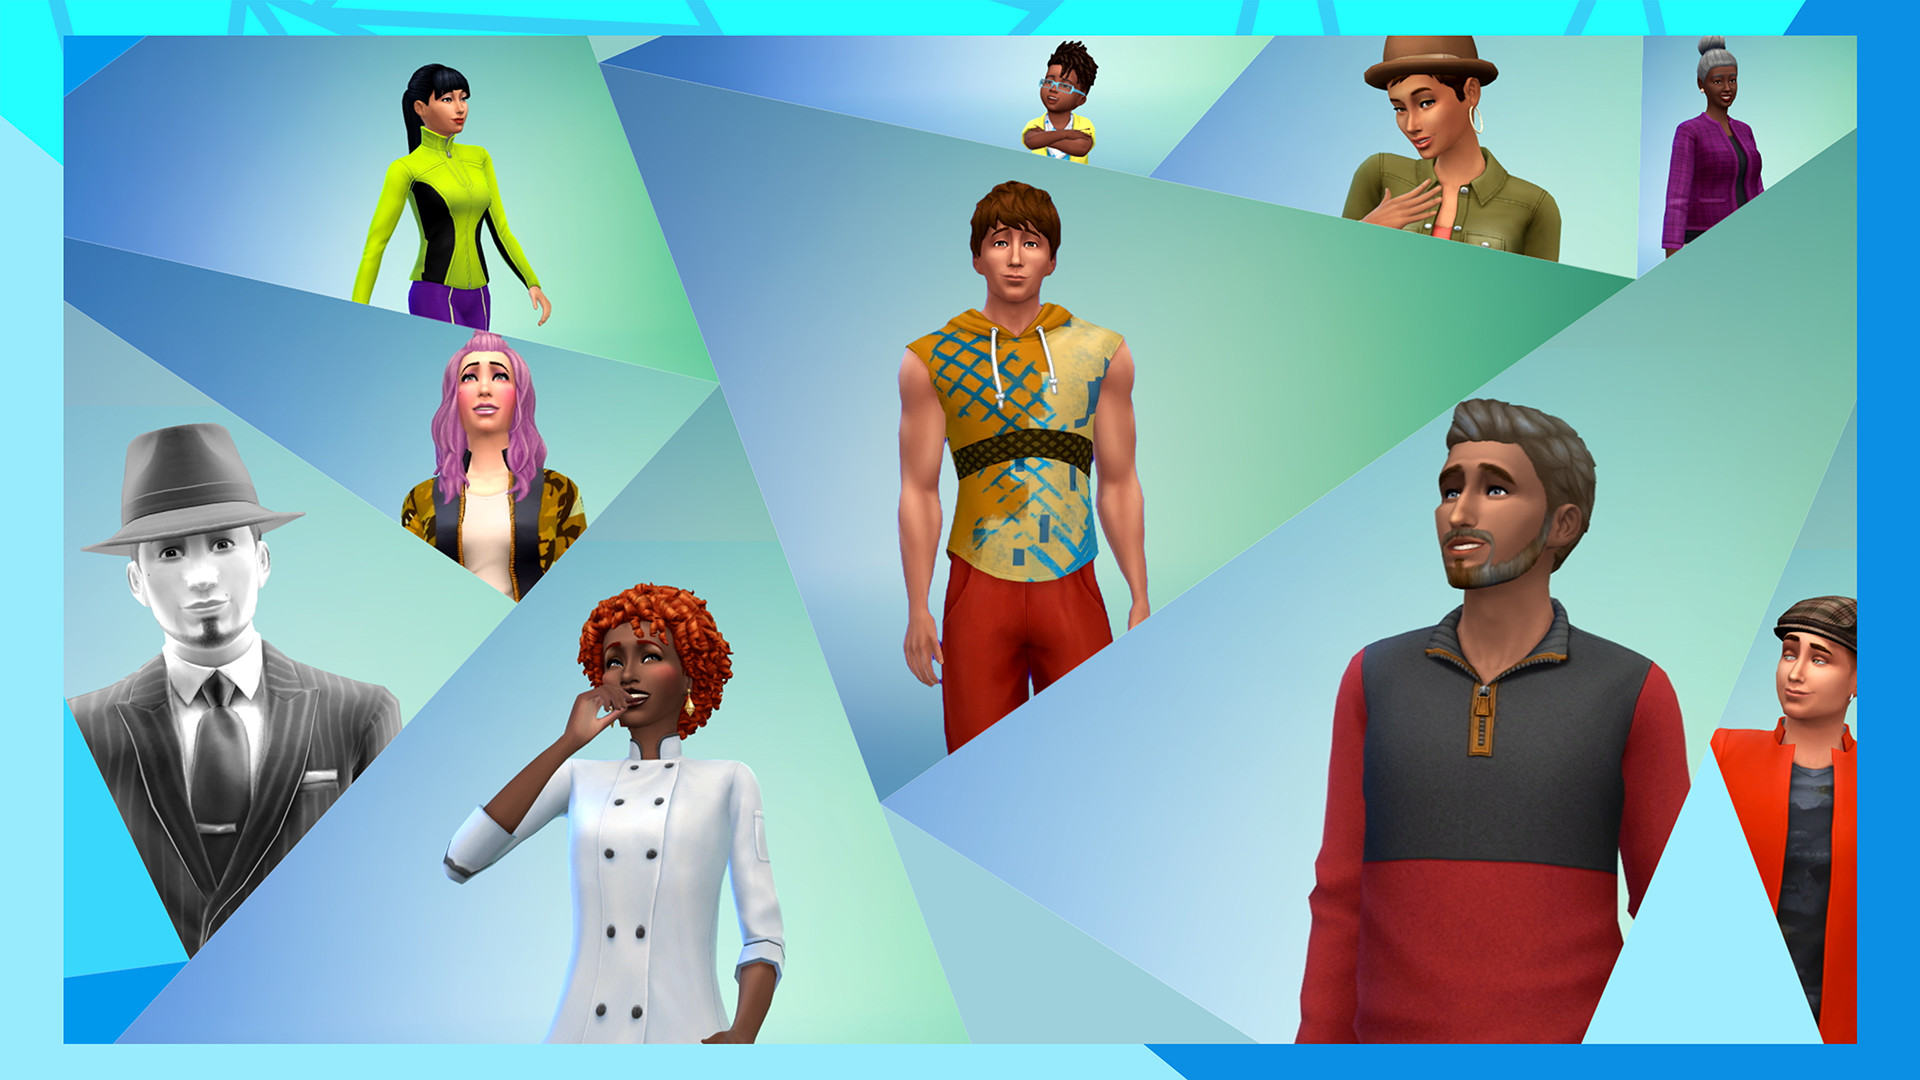 Sims 4 тоглоомын хоёр нууц шинэчлэлтийг боловсруулж байгаа ч энэ жил шинэ өргөтгөл хийгдээгүй байна